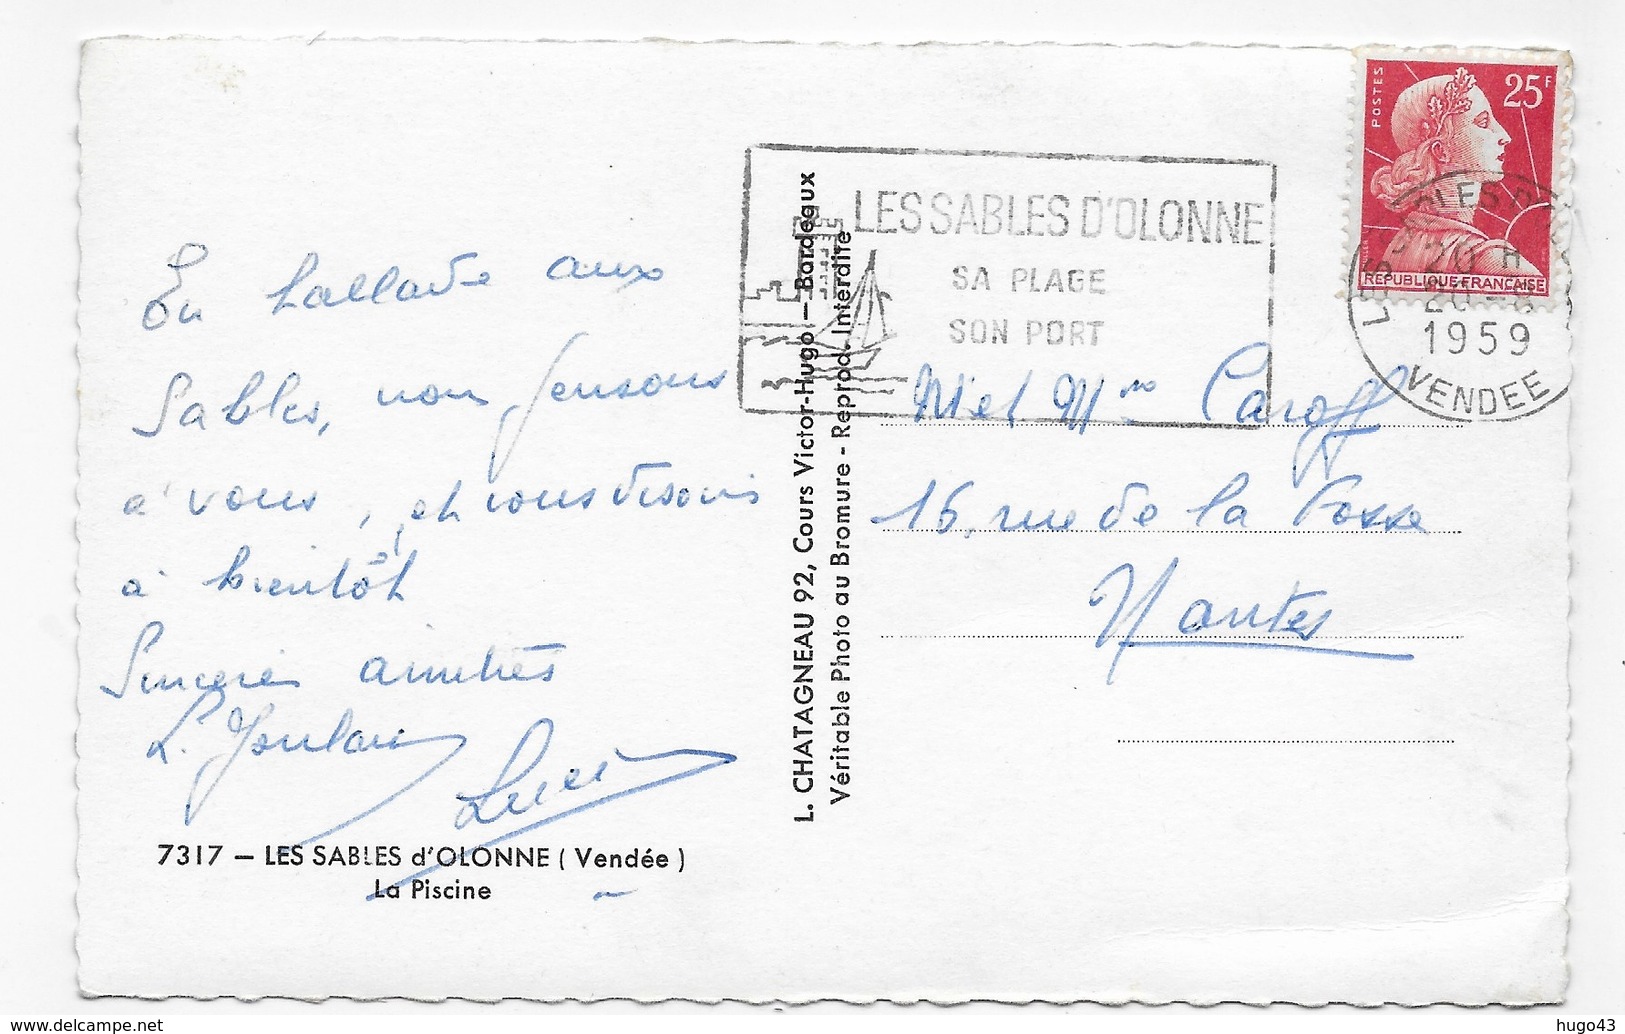 (RECTO / VERSO) LES SABLES D' OLONNE EN 1959 - N° 7317 - LA PSICINE - BELLE FLAMME - FORMAT CPA VOYAGEE - Sables D'Olonne